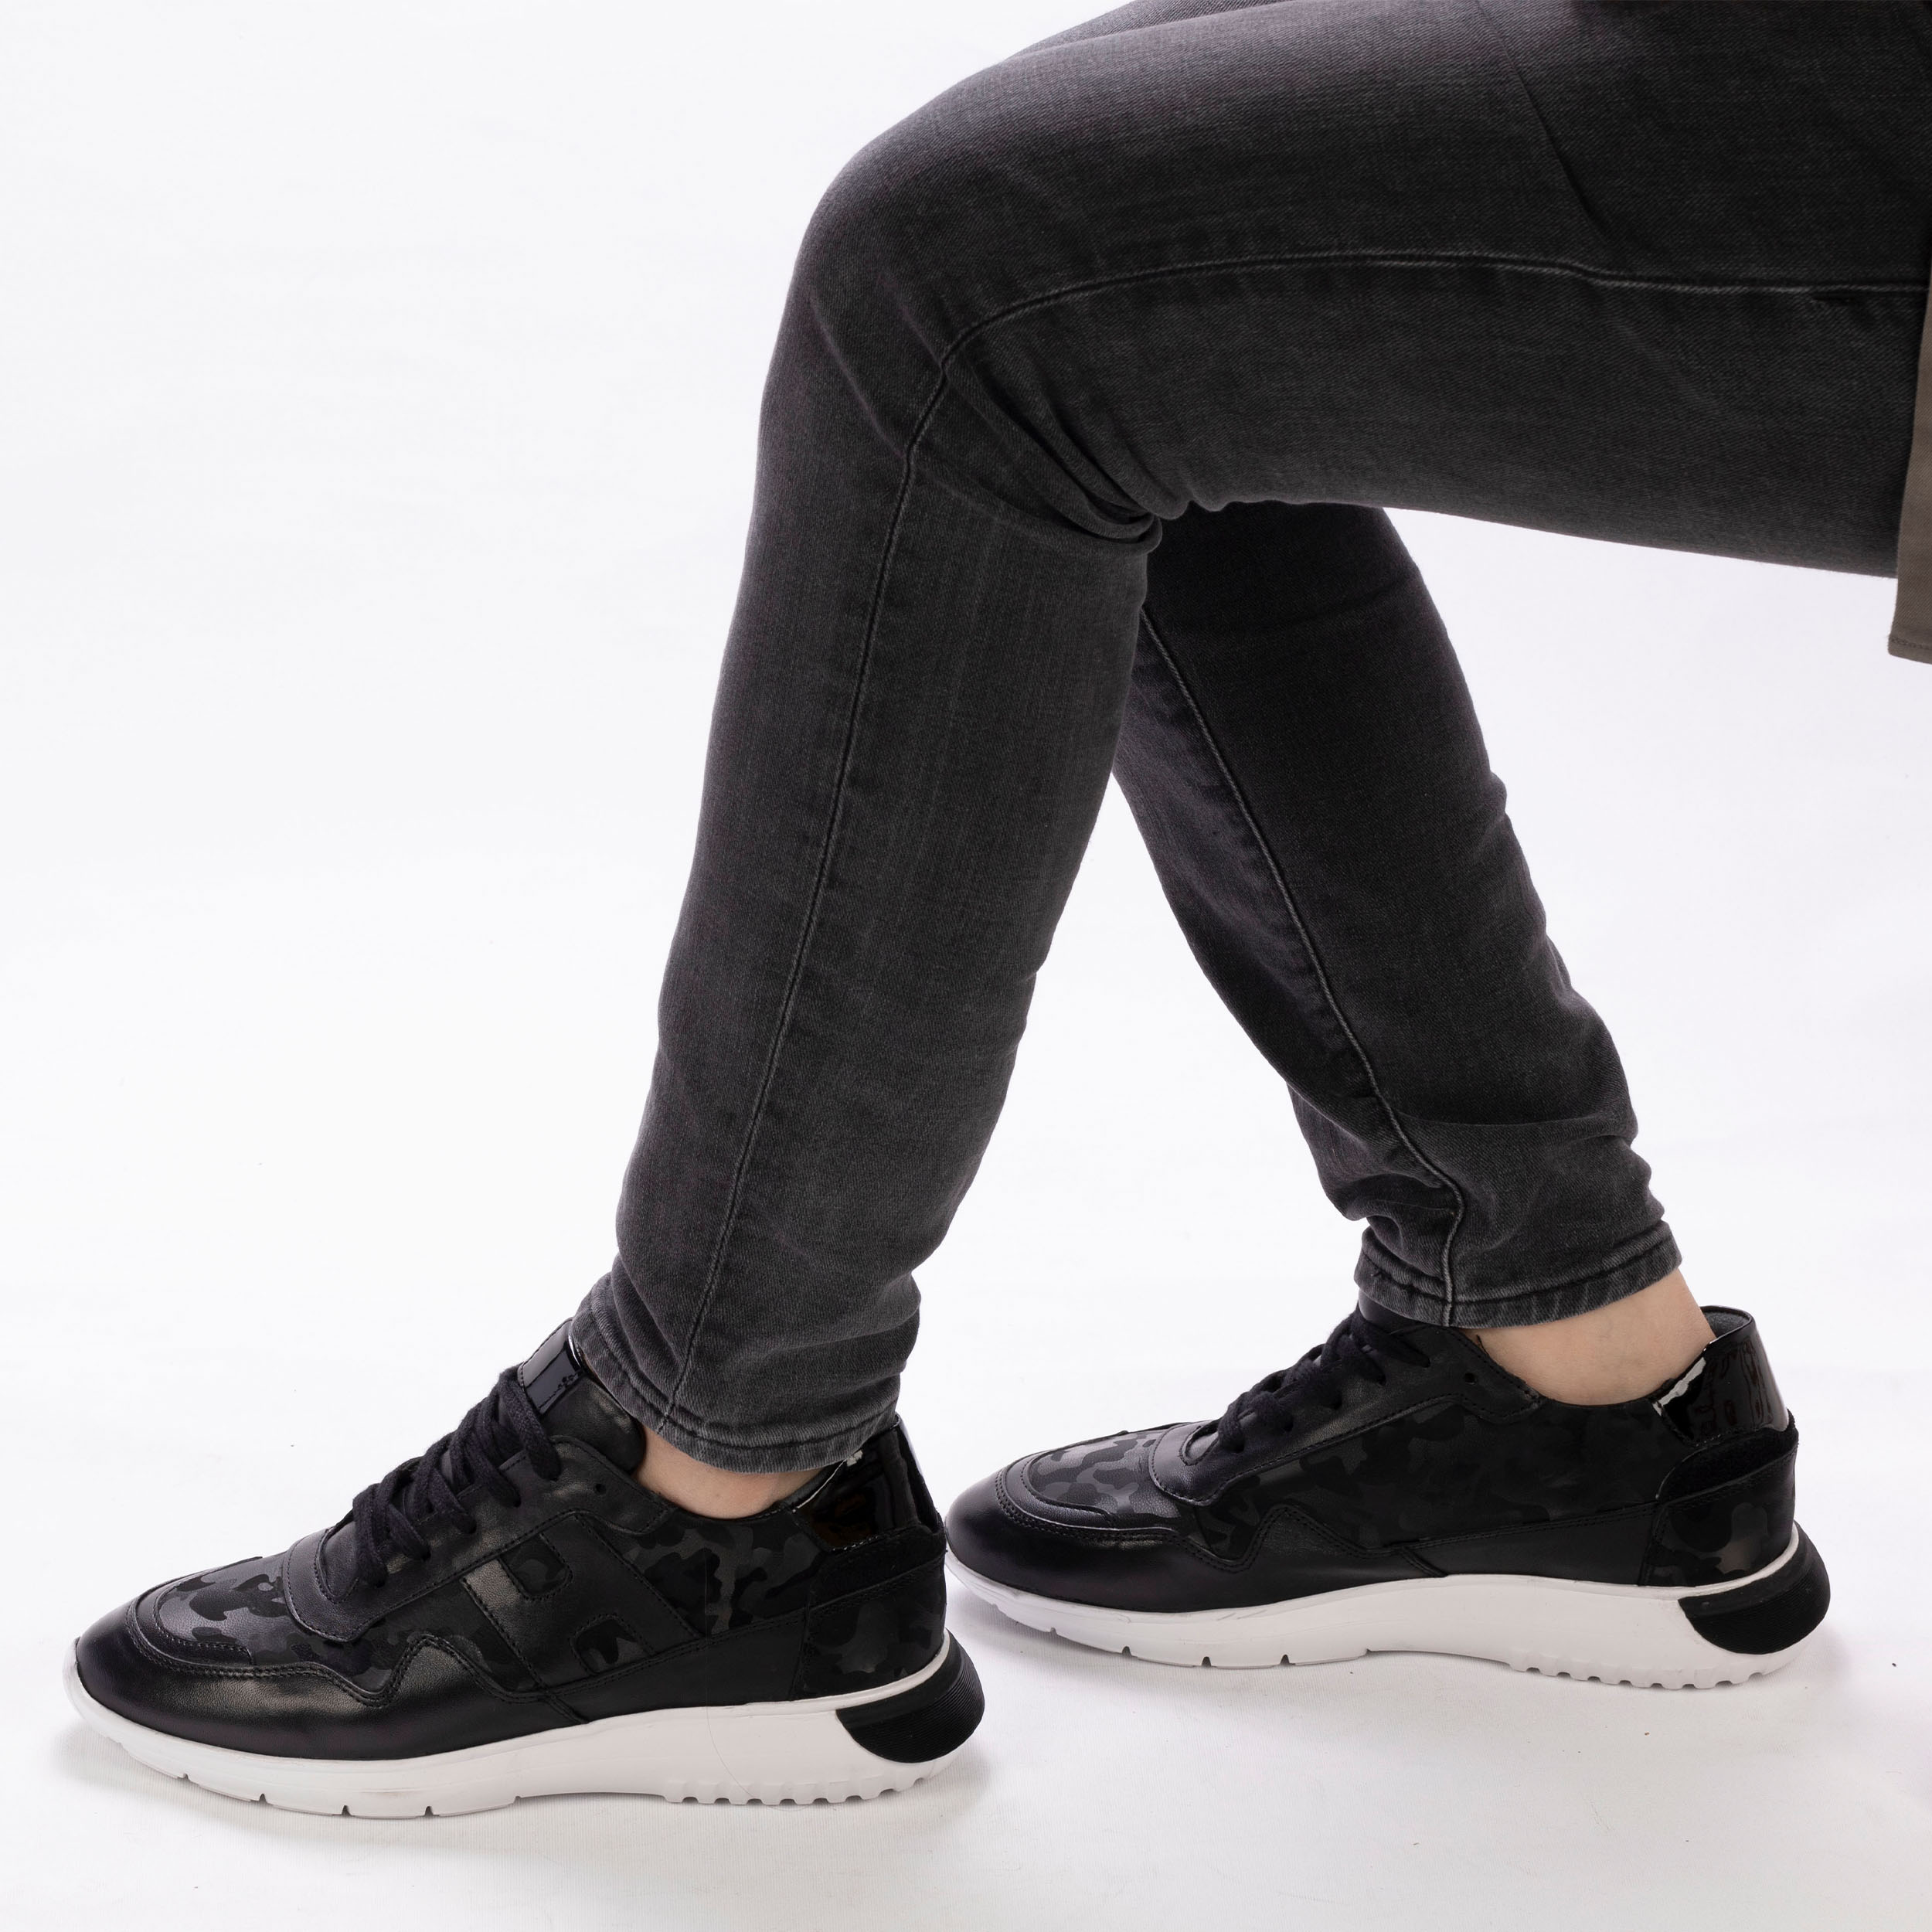 Erkek Hakiki Deri Siyah Kalın Tabanlı Kamuflaj Desen Özel Dizayn Tasarım Spor Günlük Ayakkabı Sneakers, Renk: Siyah, Beden: 39